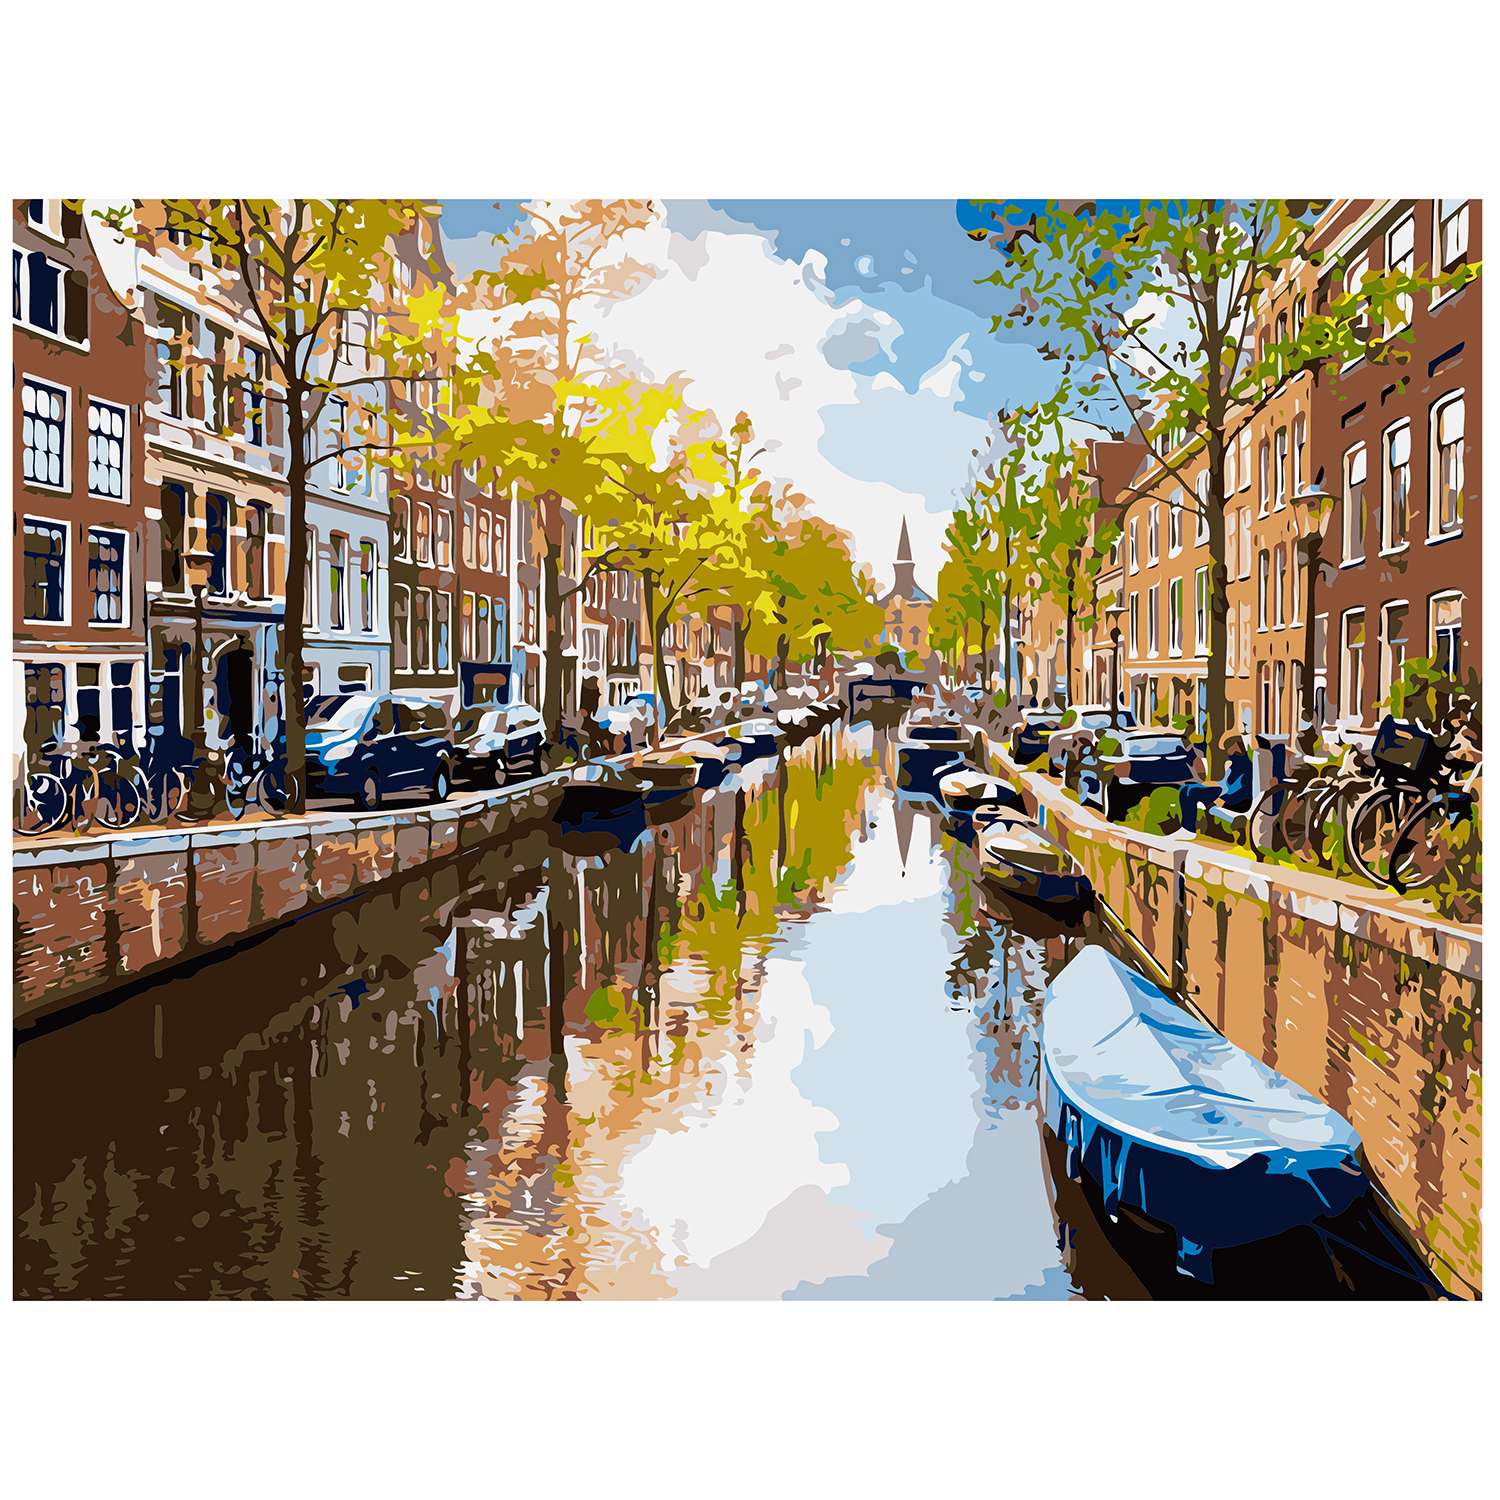 Картина по номерам Рыжий кот Канал в Амстердаме на рассвете Х-6476 - фото 1